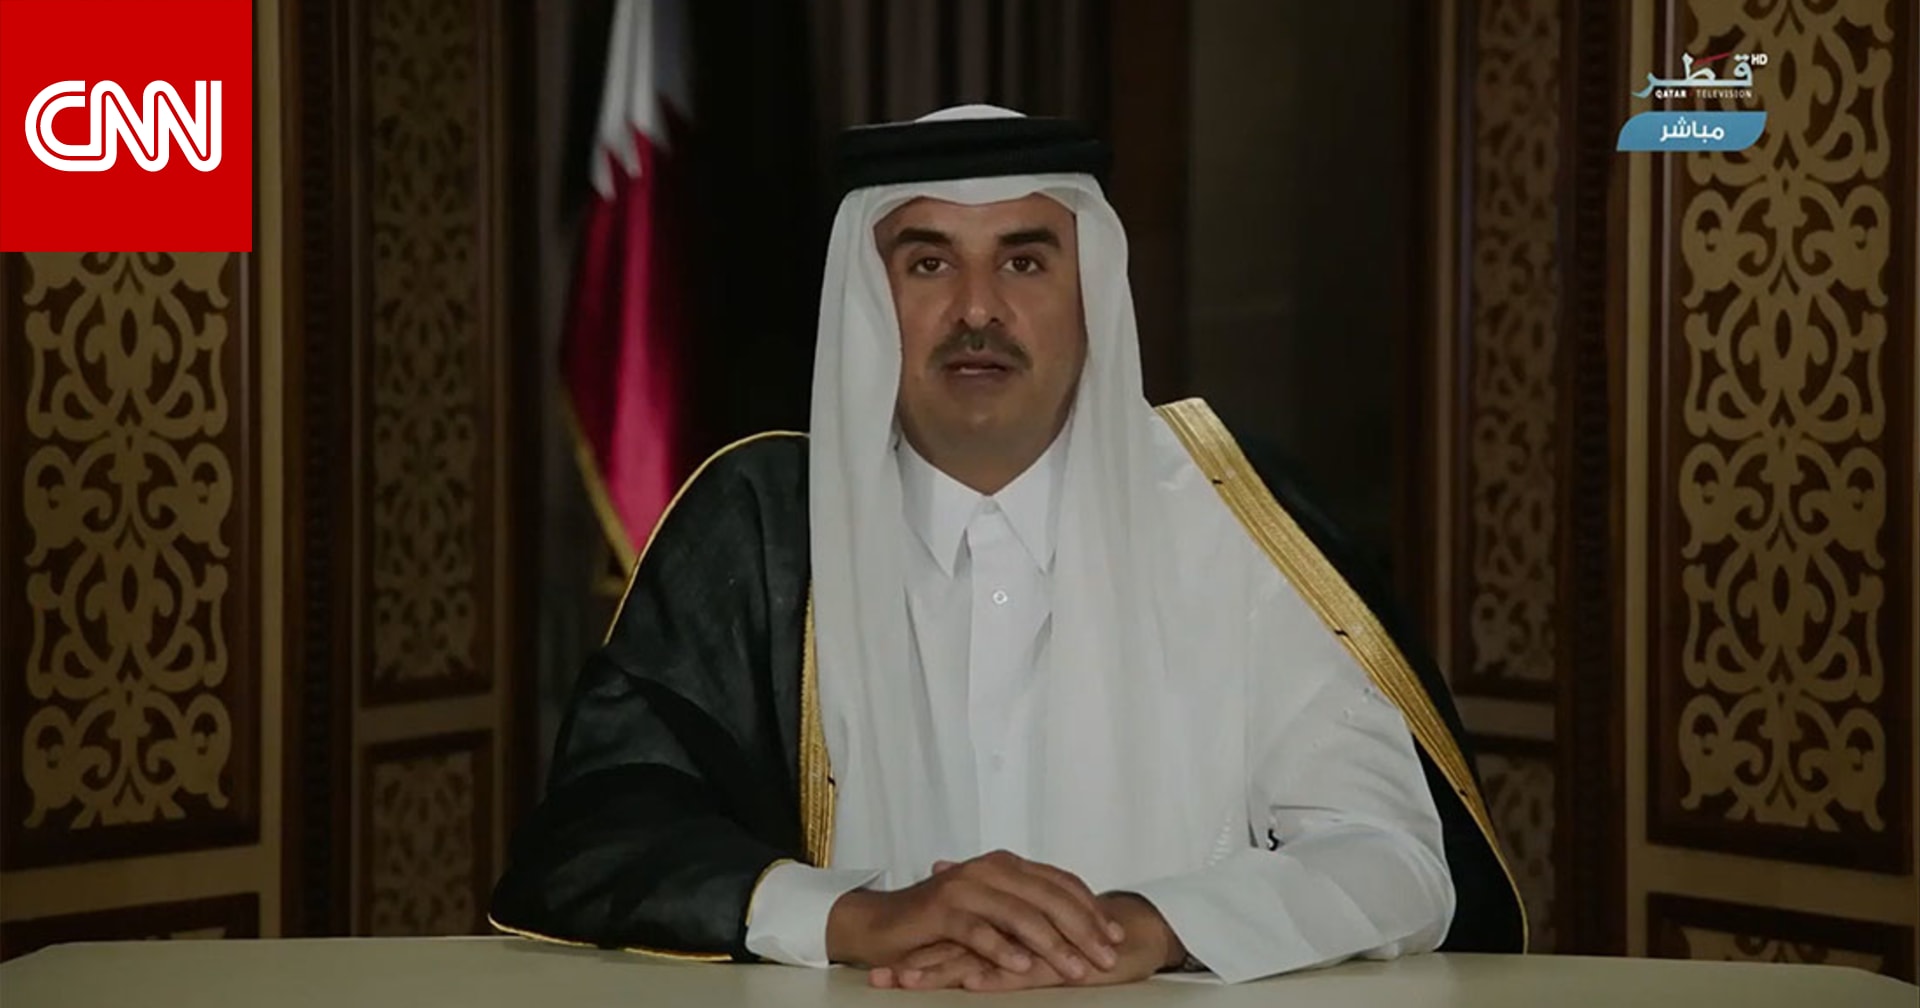 أمير قطر بكلمة عن رمضان 2020 وسط فيروس كورونا: أدركنا مبكرا خطورة الأزمة - CNN Arabic